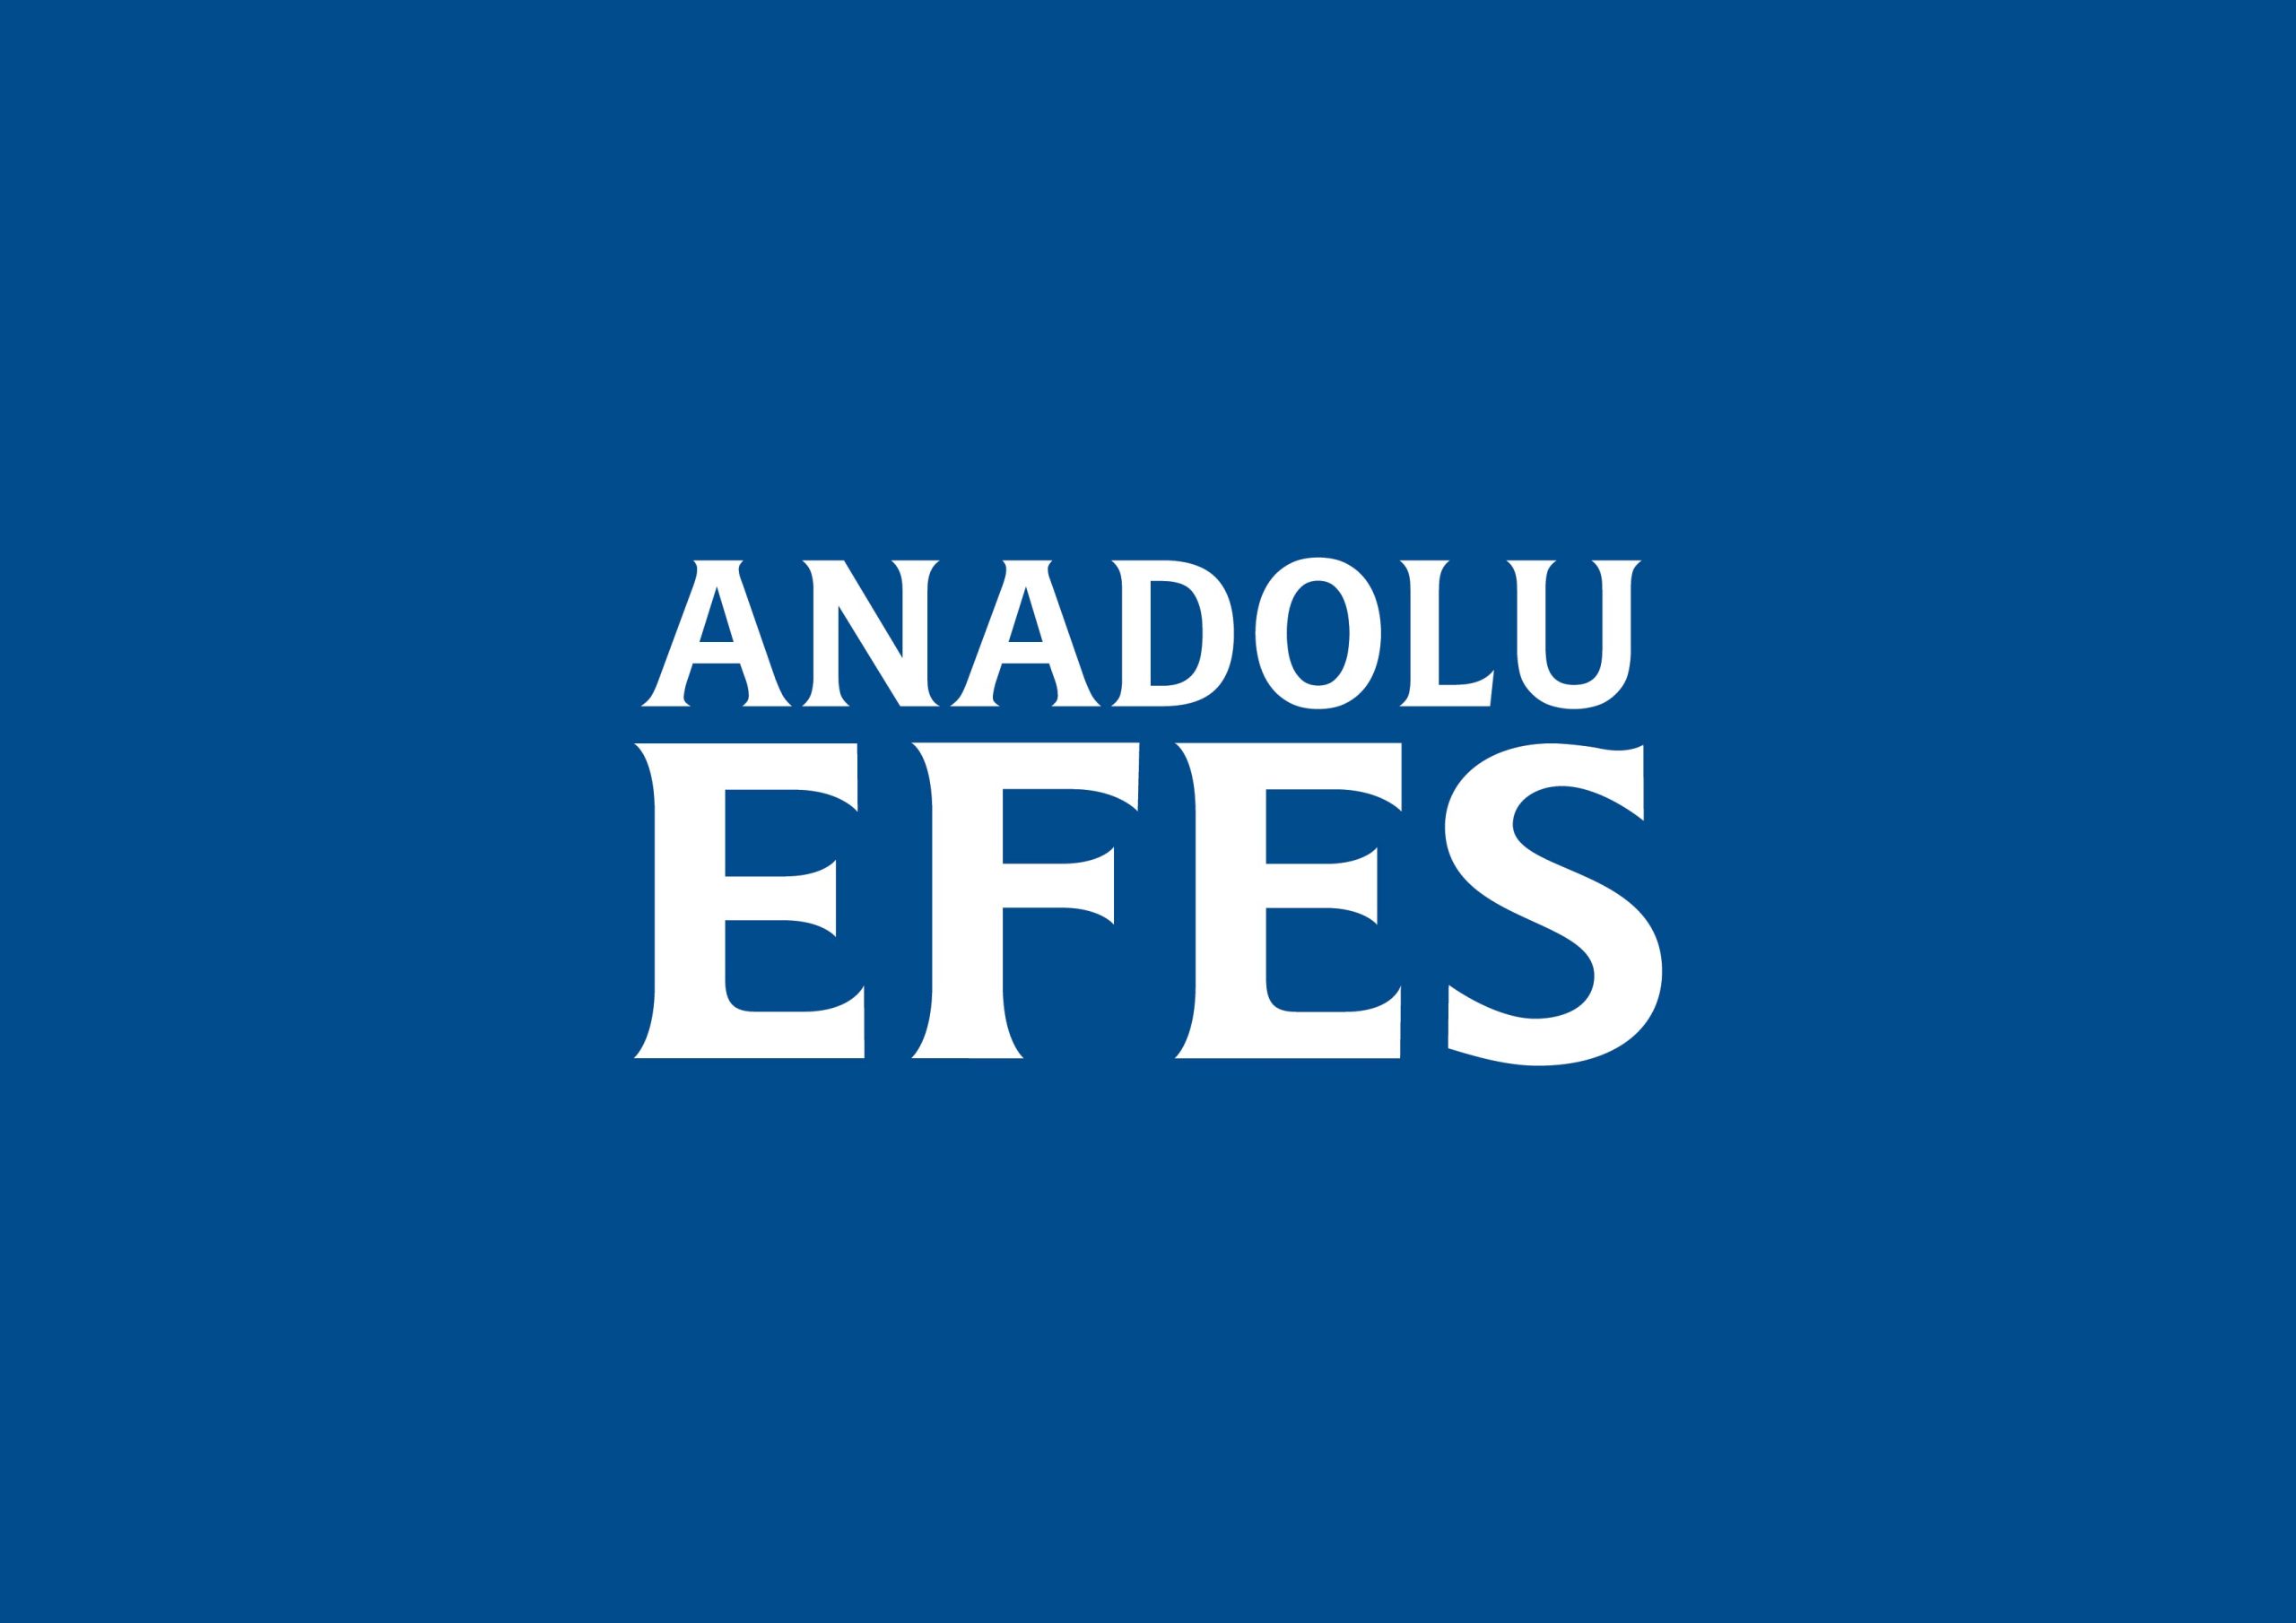 Anadolu Efes üçüncü çeyrek konsolide finansal rakamlarını açıkladı